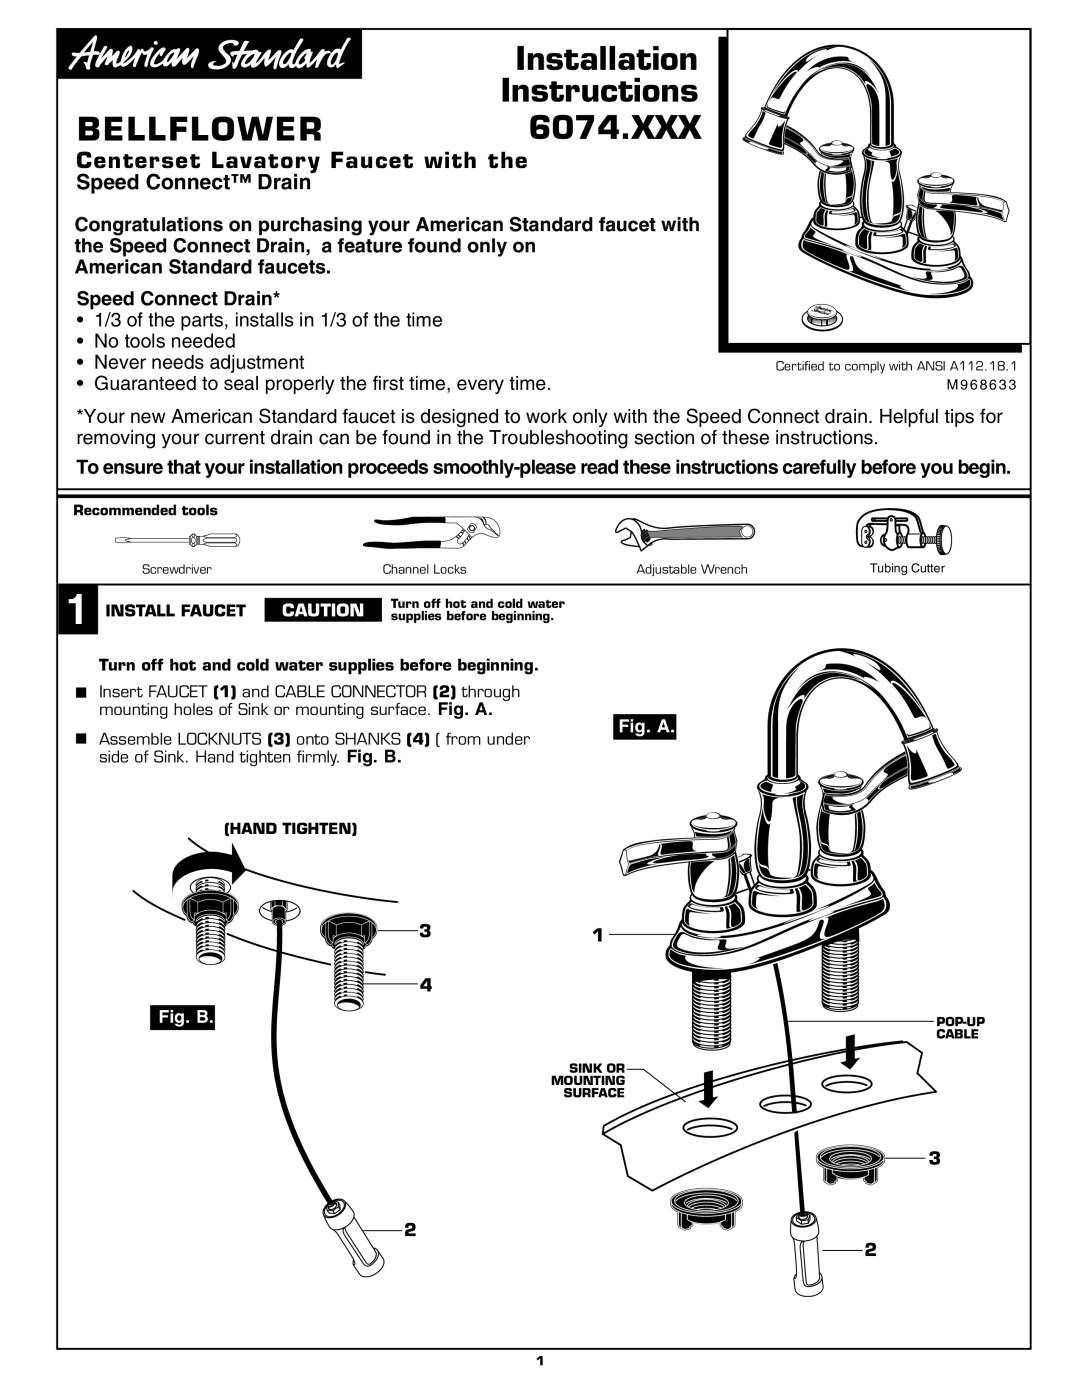 American Standard 6074.XXX installation instructions Installation, Instructions, Bellflower, Fig. A, Fig. B 